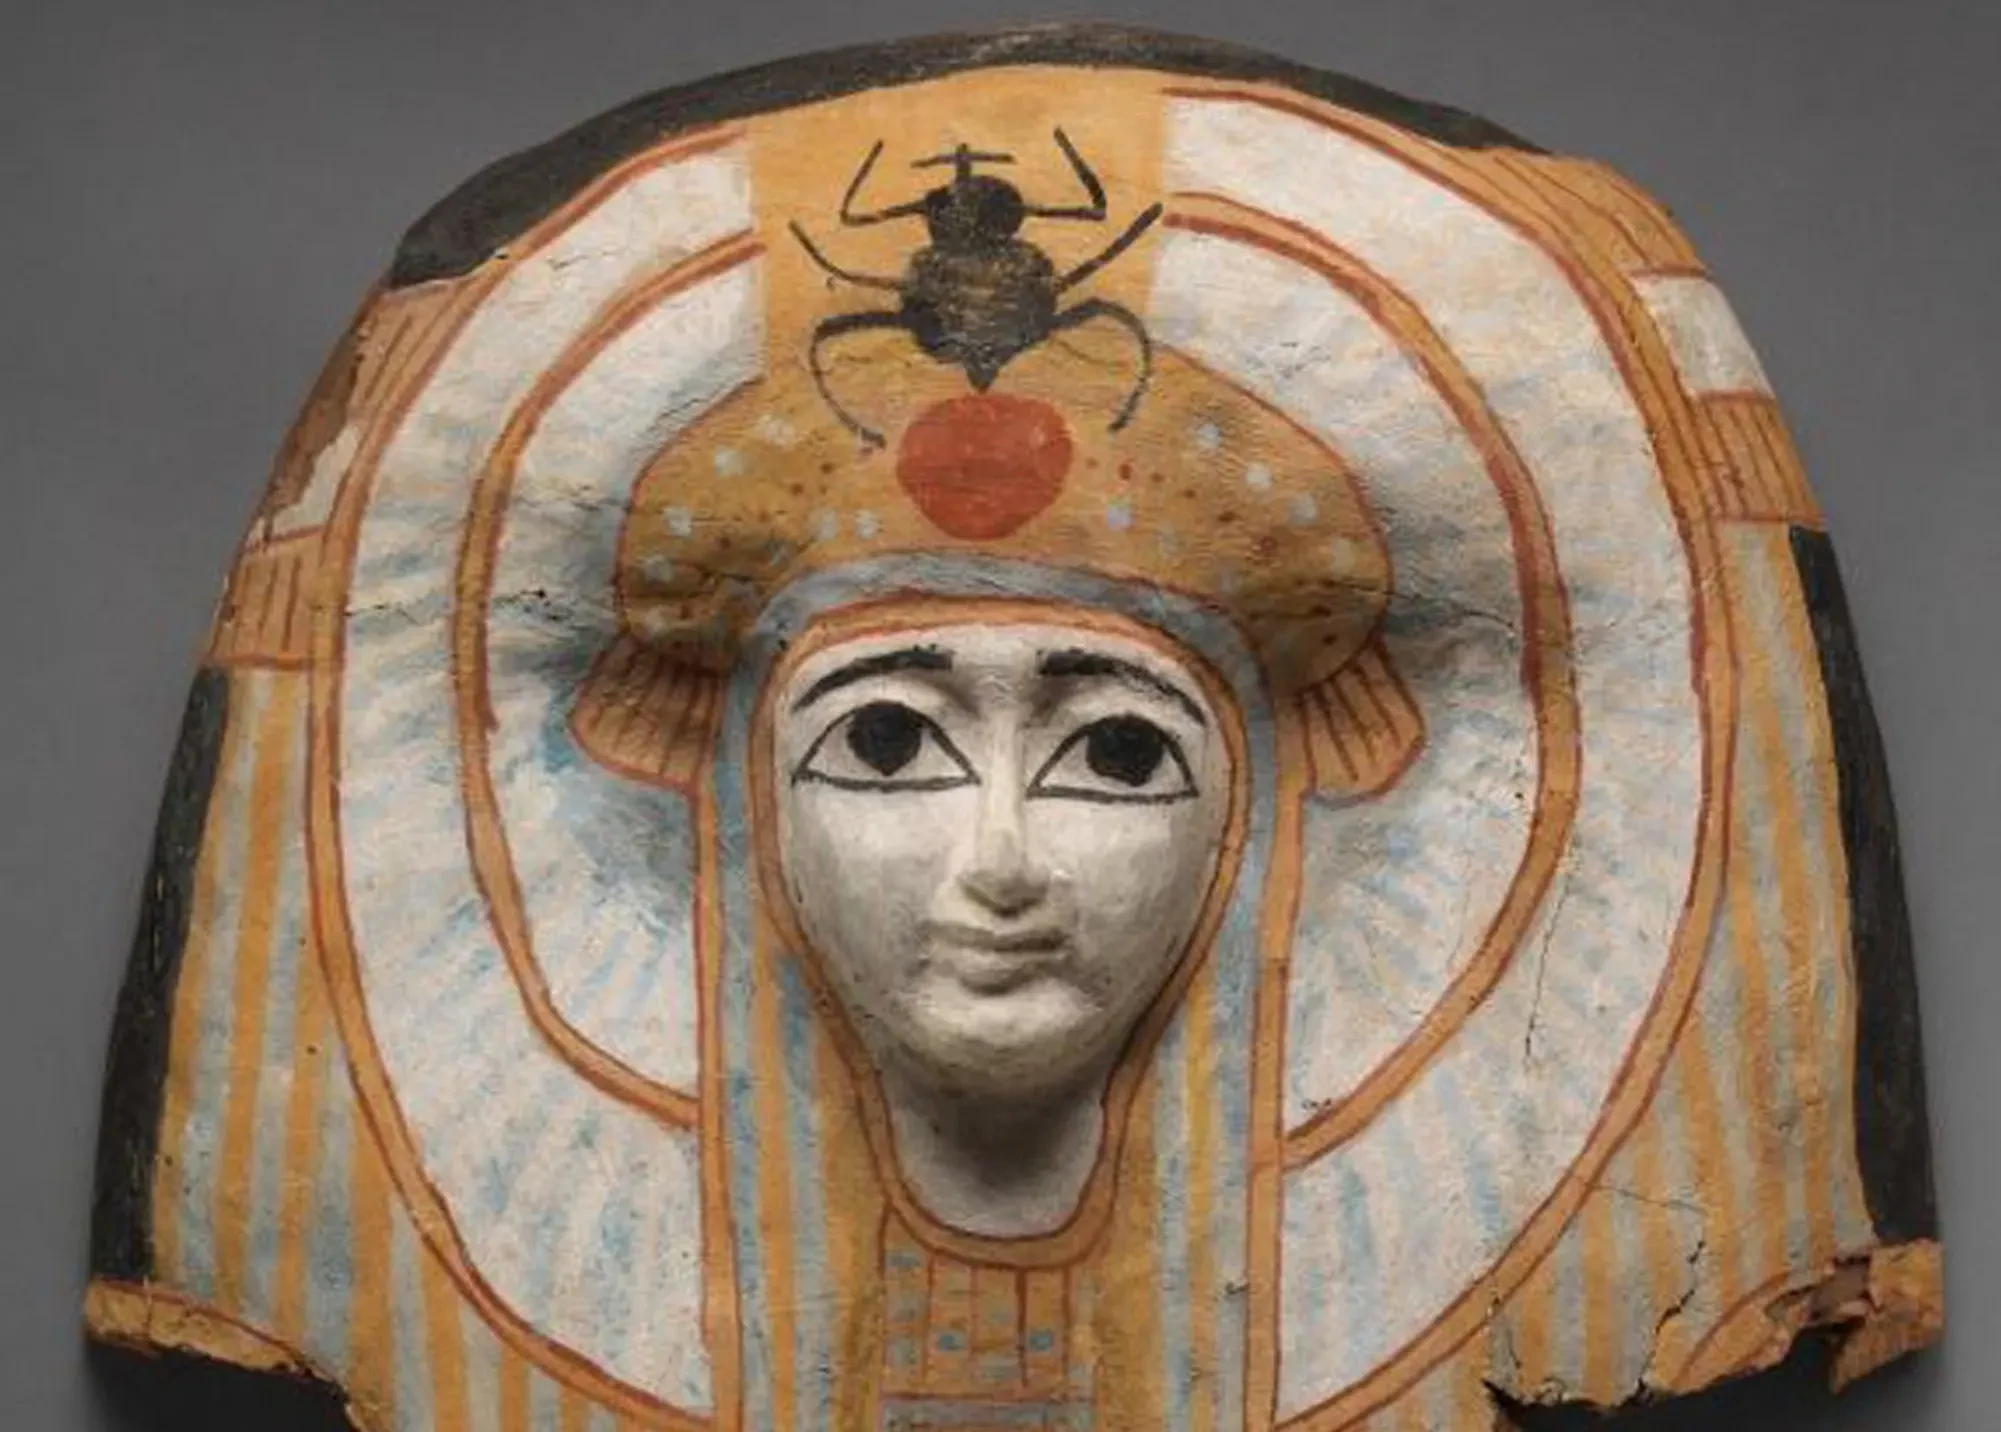 Ce masque de sarcophage en bois (945-712 BCE)